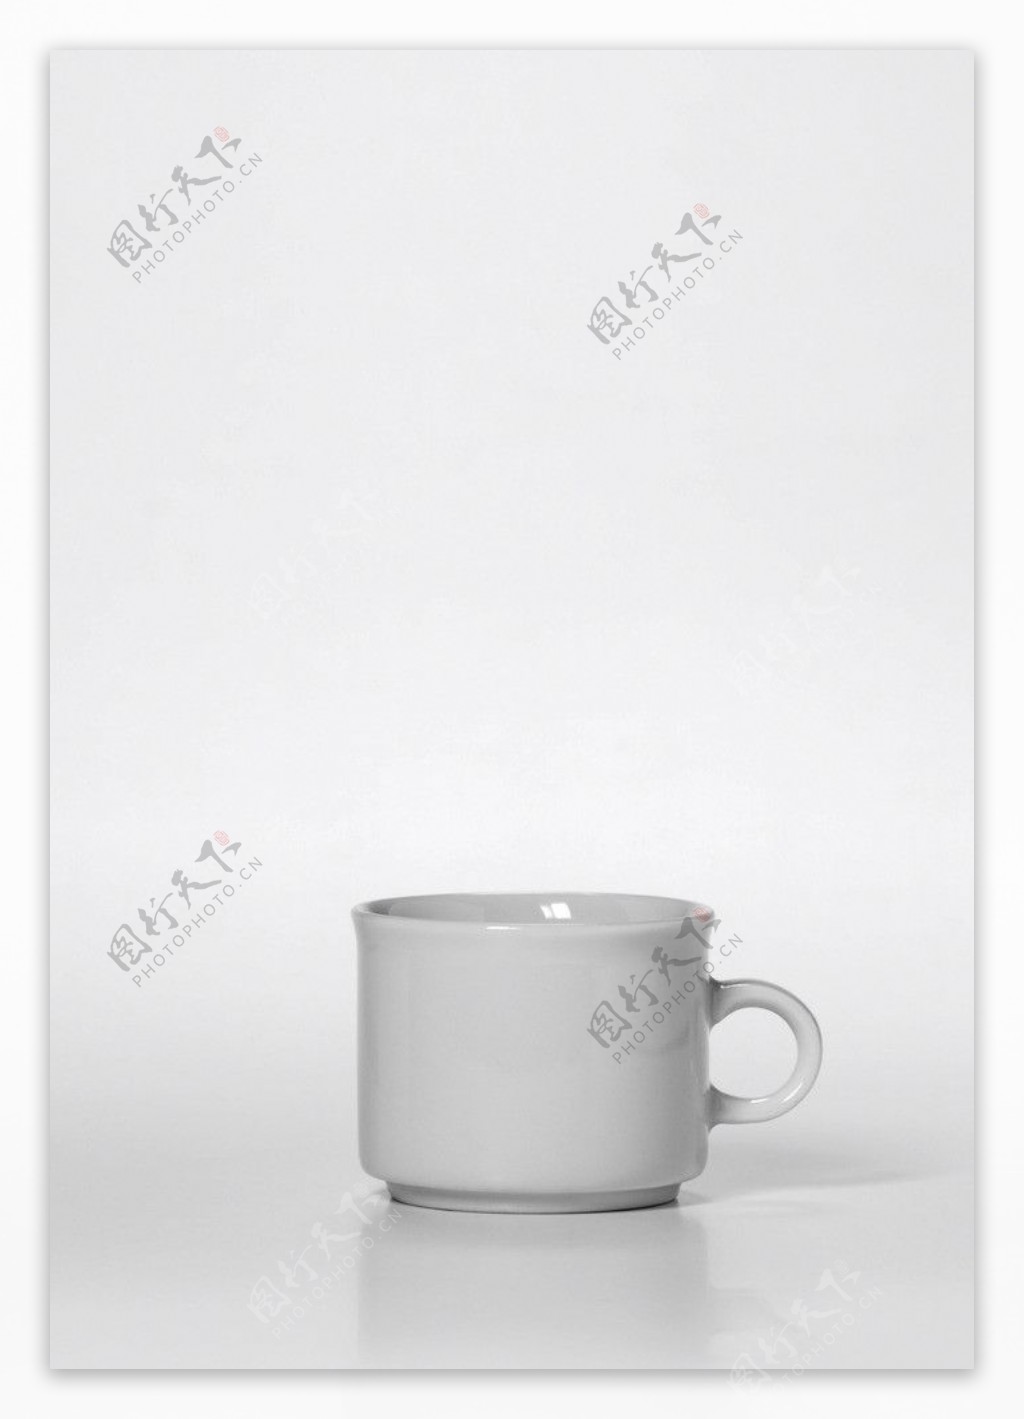 白色陶瓷杯图片